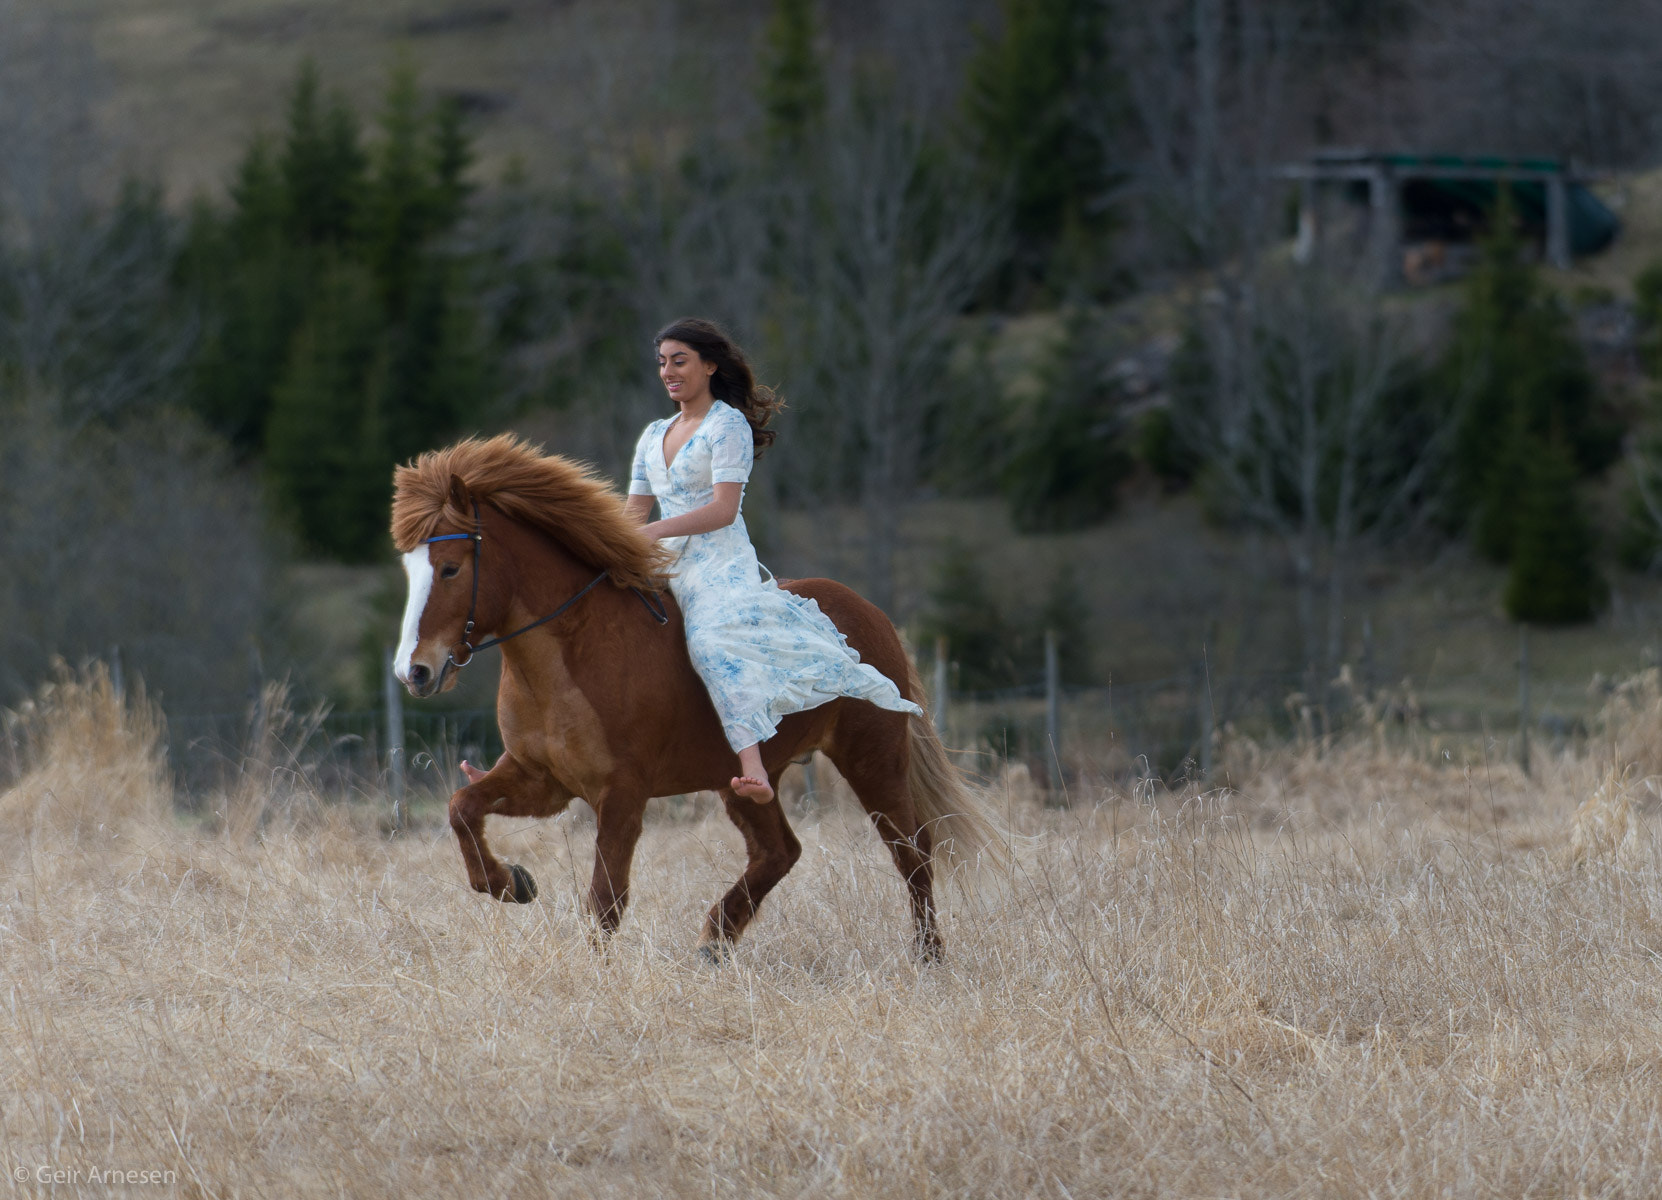 Nikon D4 sample photo. Horse riding girl photography